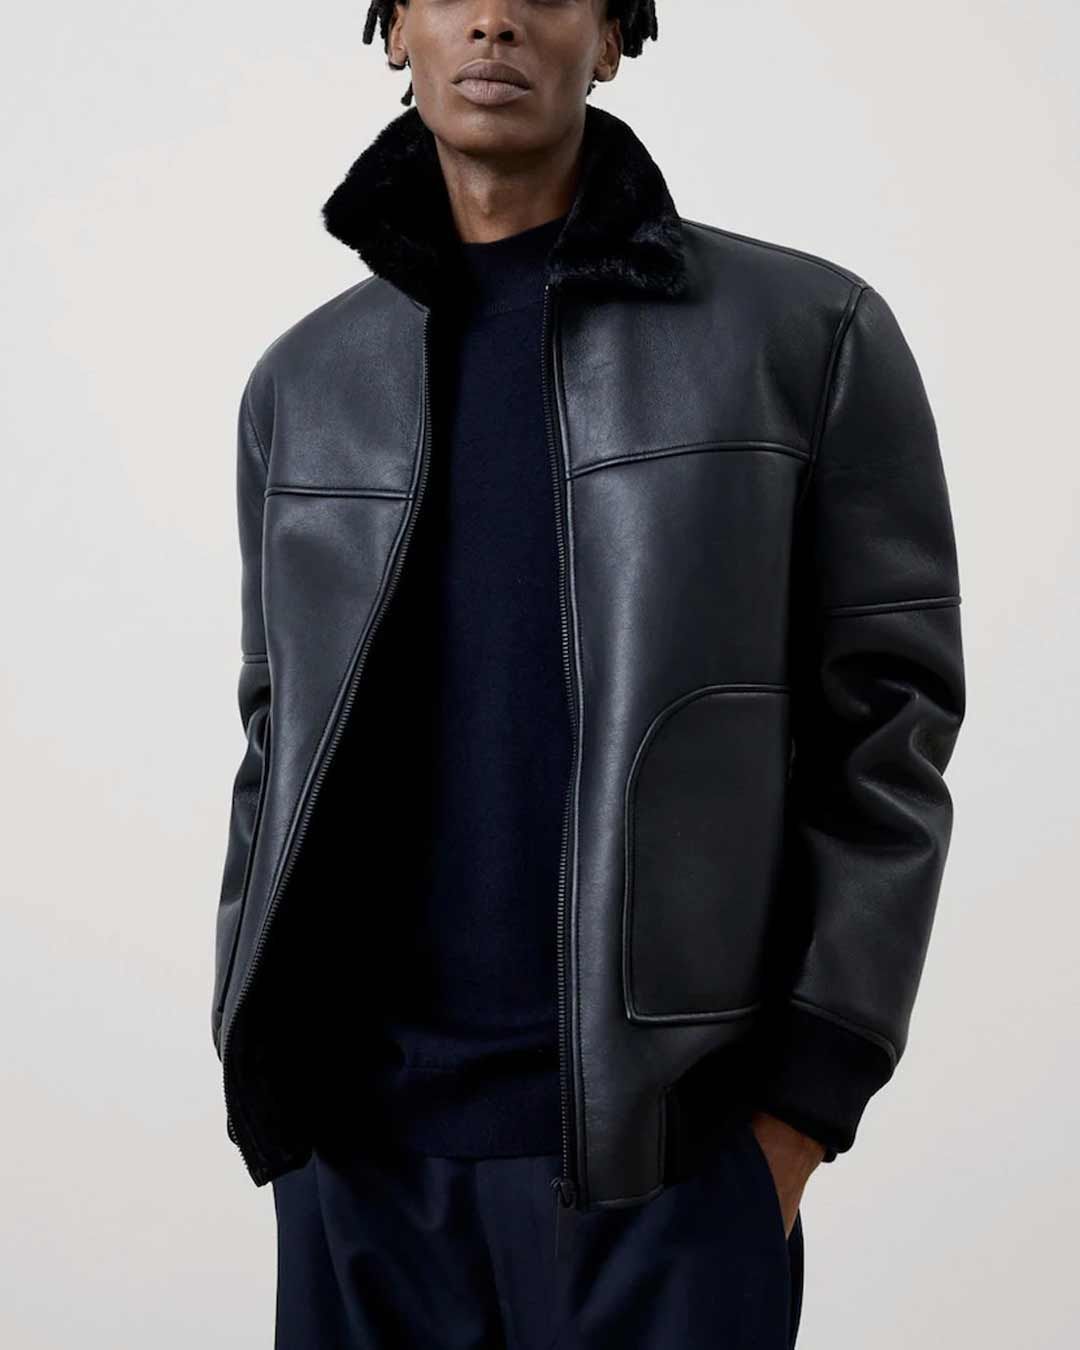 creativo los Chillido 7 chaquetas de invierno baratas de hombre en El Corte Inglés